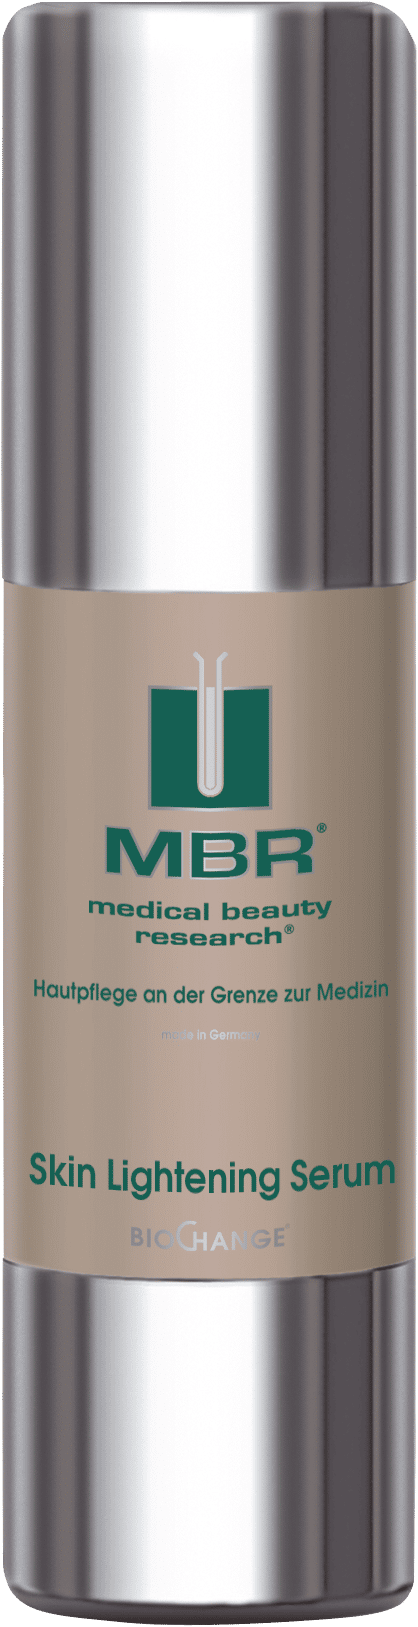 MBR BioChange - Skin Care Skin Lightening Serum 